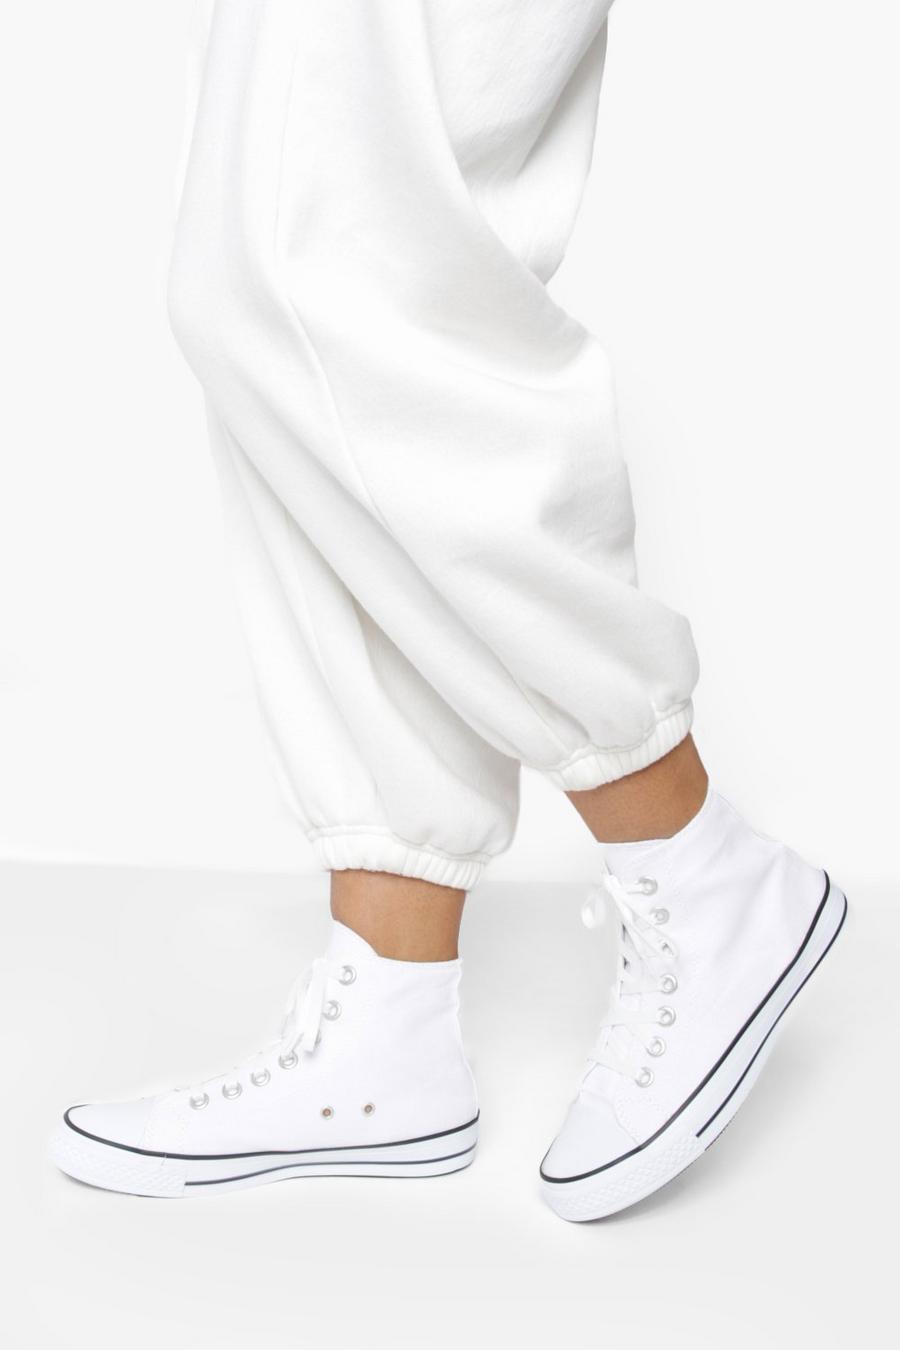 לבן blanco נעלי ספורט קנבס עם חלק עליון גבוה